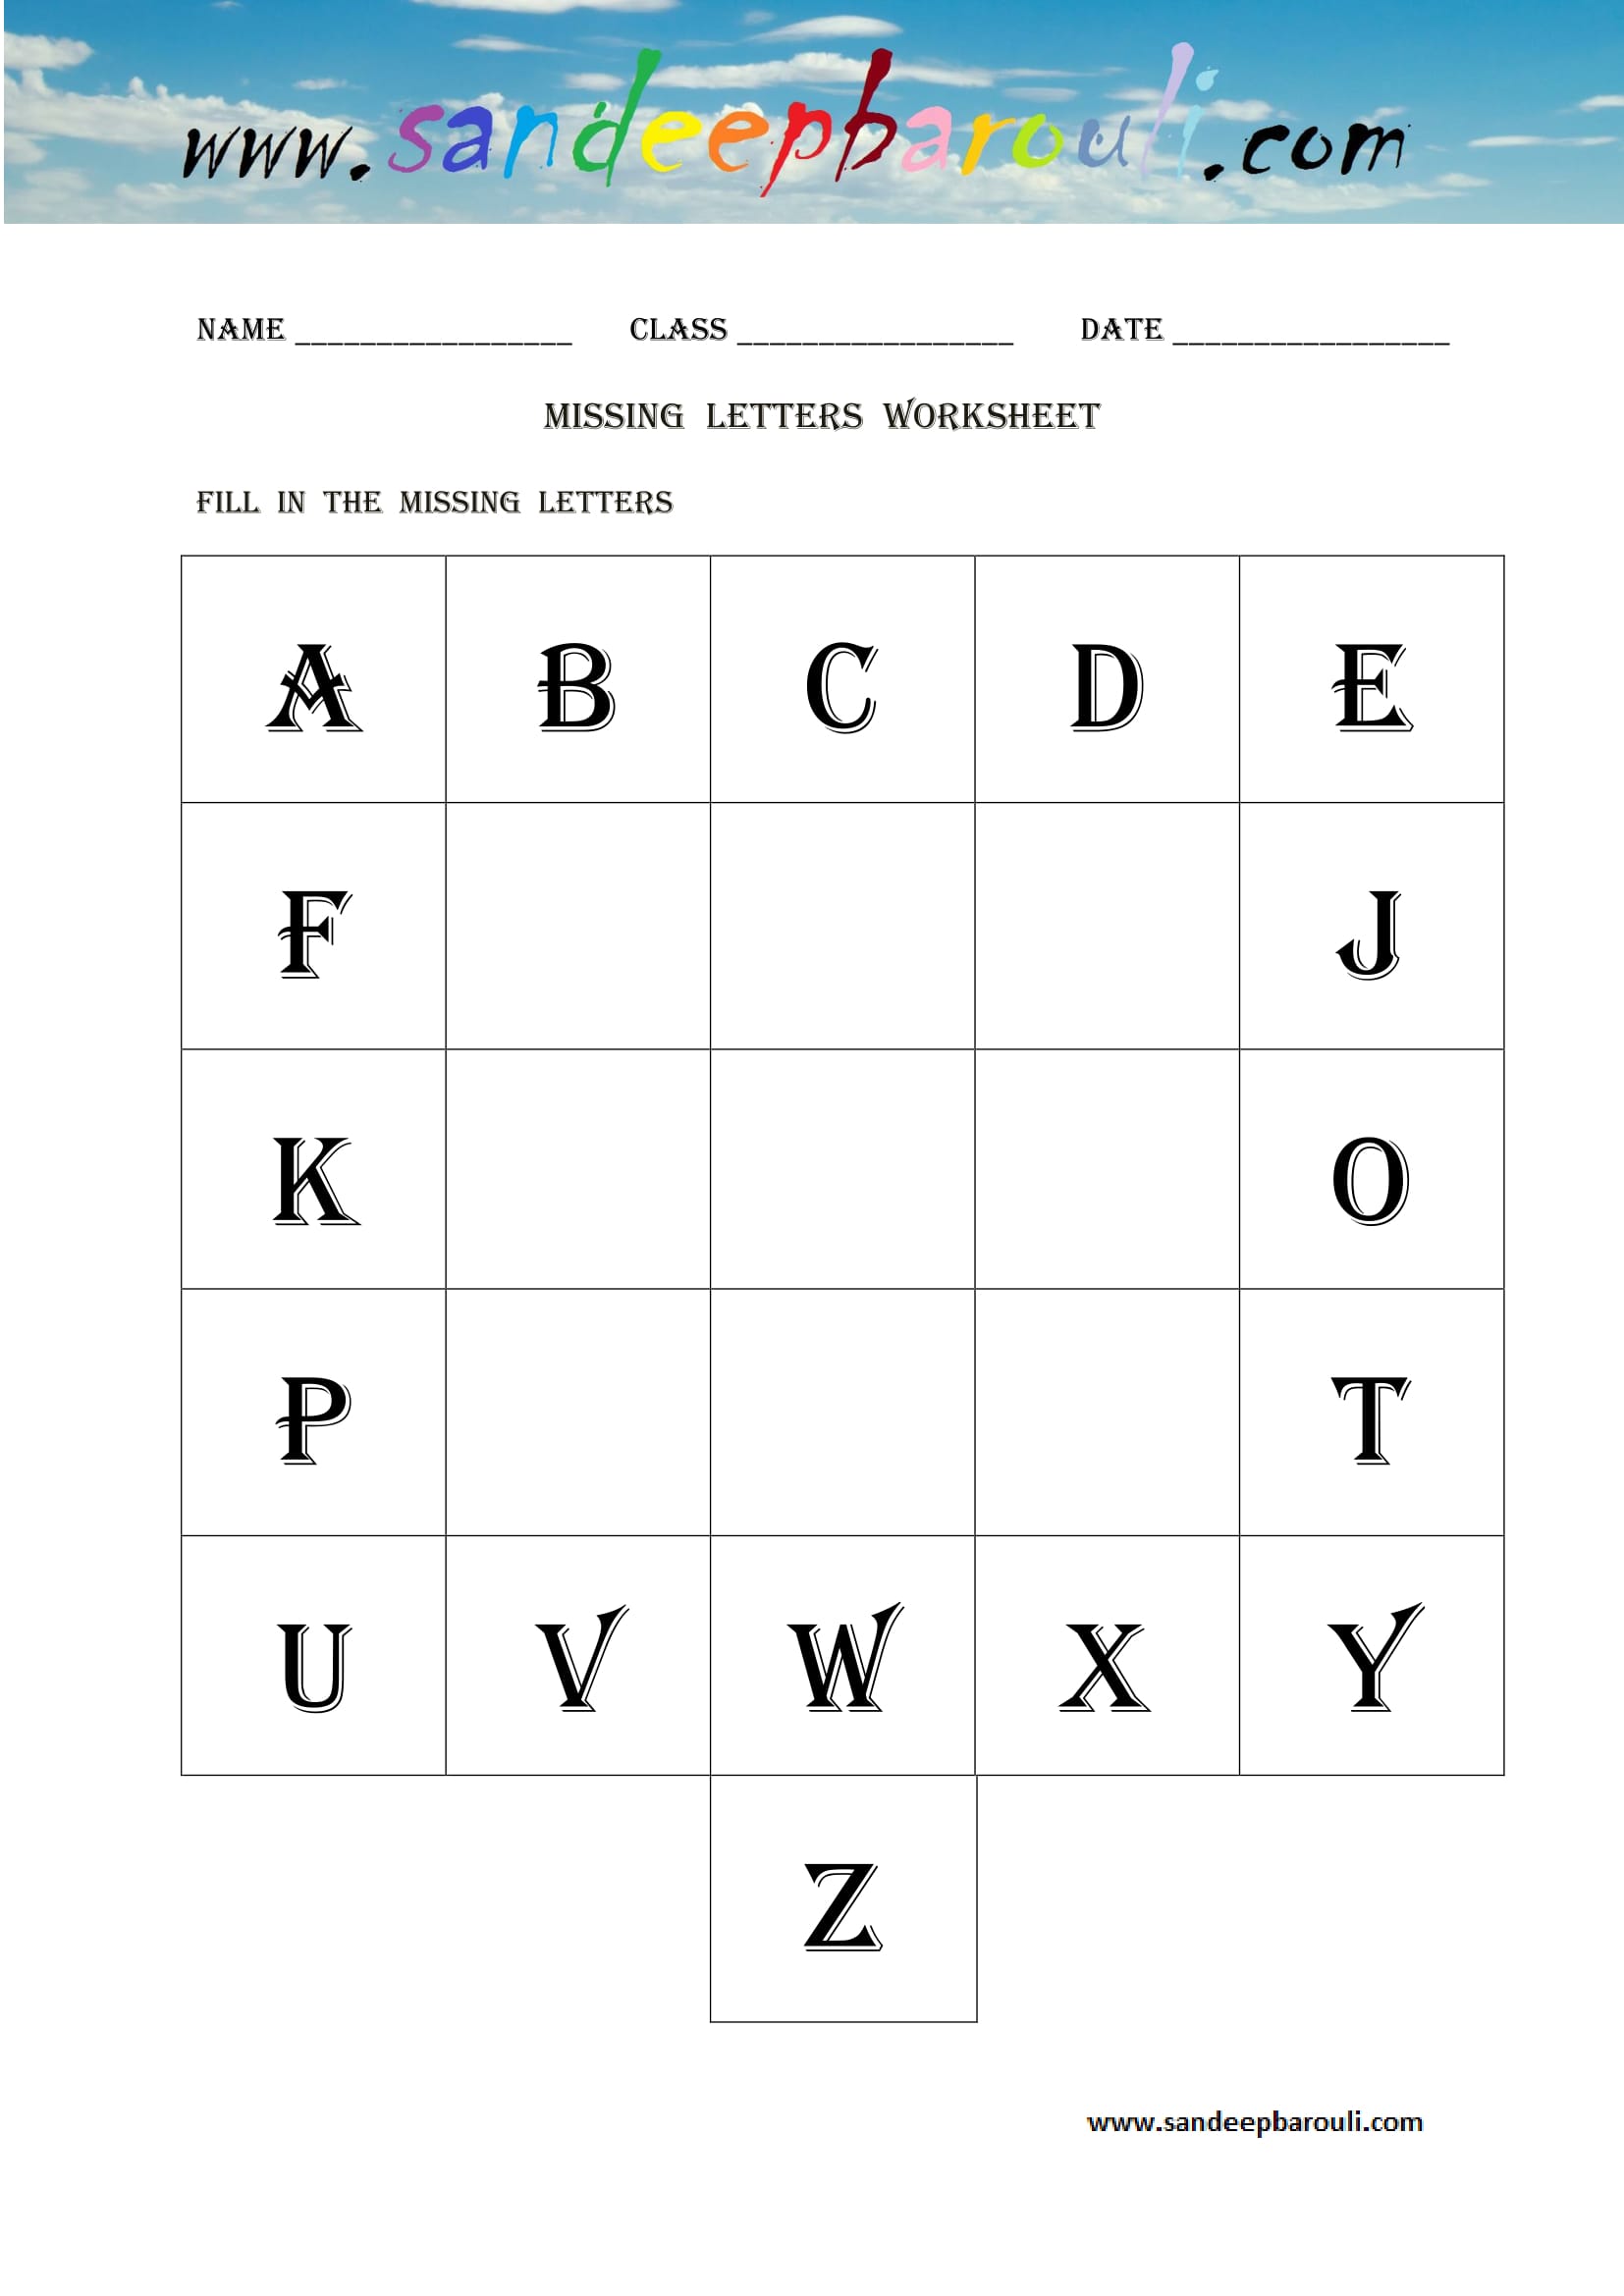 Missing letters Worksheet (12)